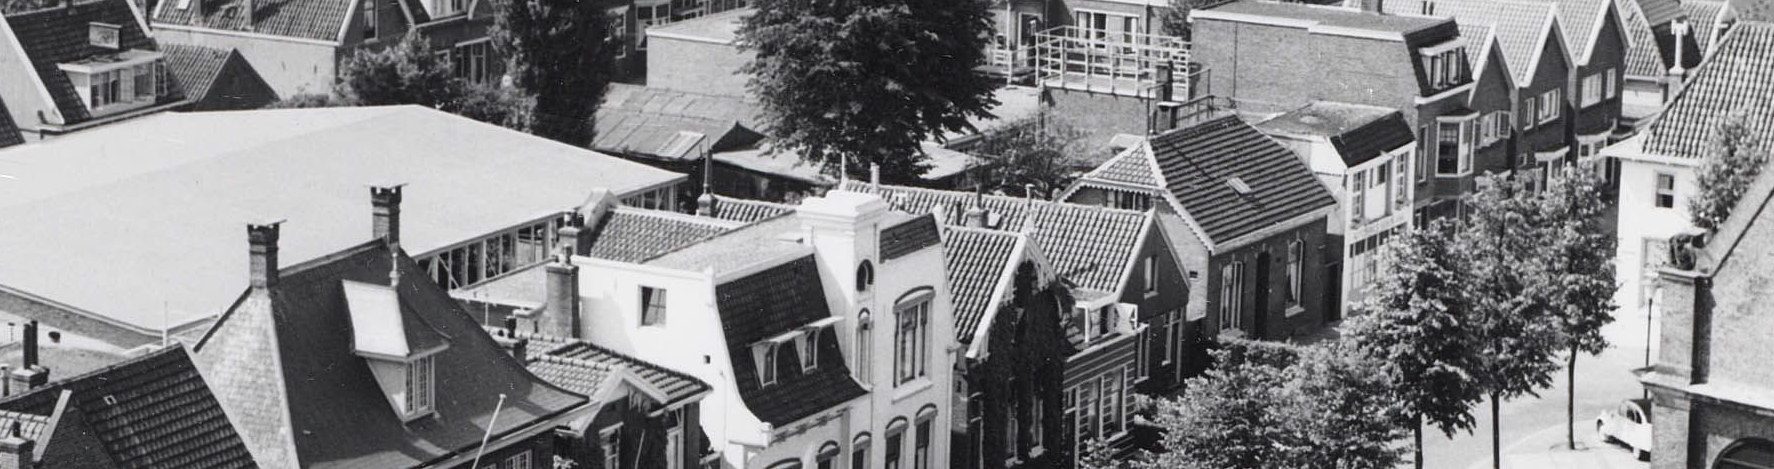 Foto uit 1960 met het houten huis in de rooilijn van de oostelijke belendingen ter linker zijde.